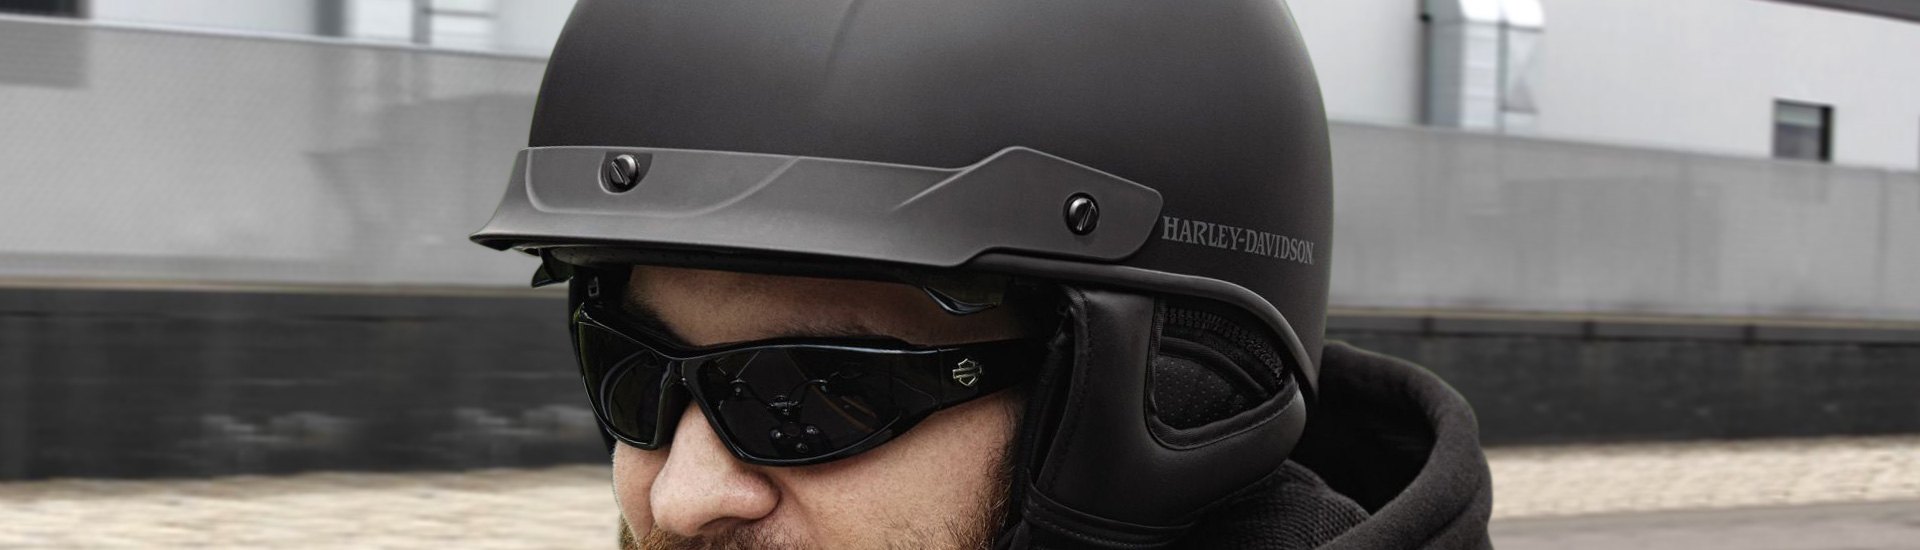 Cruiser Bike Helmets | Modular, Full Face, Open Face, Half Shell